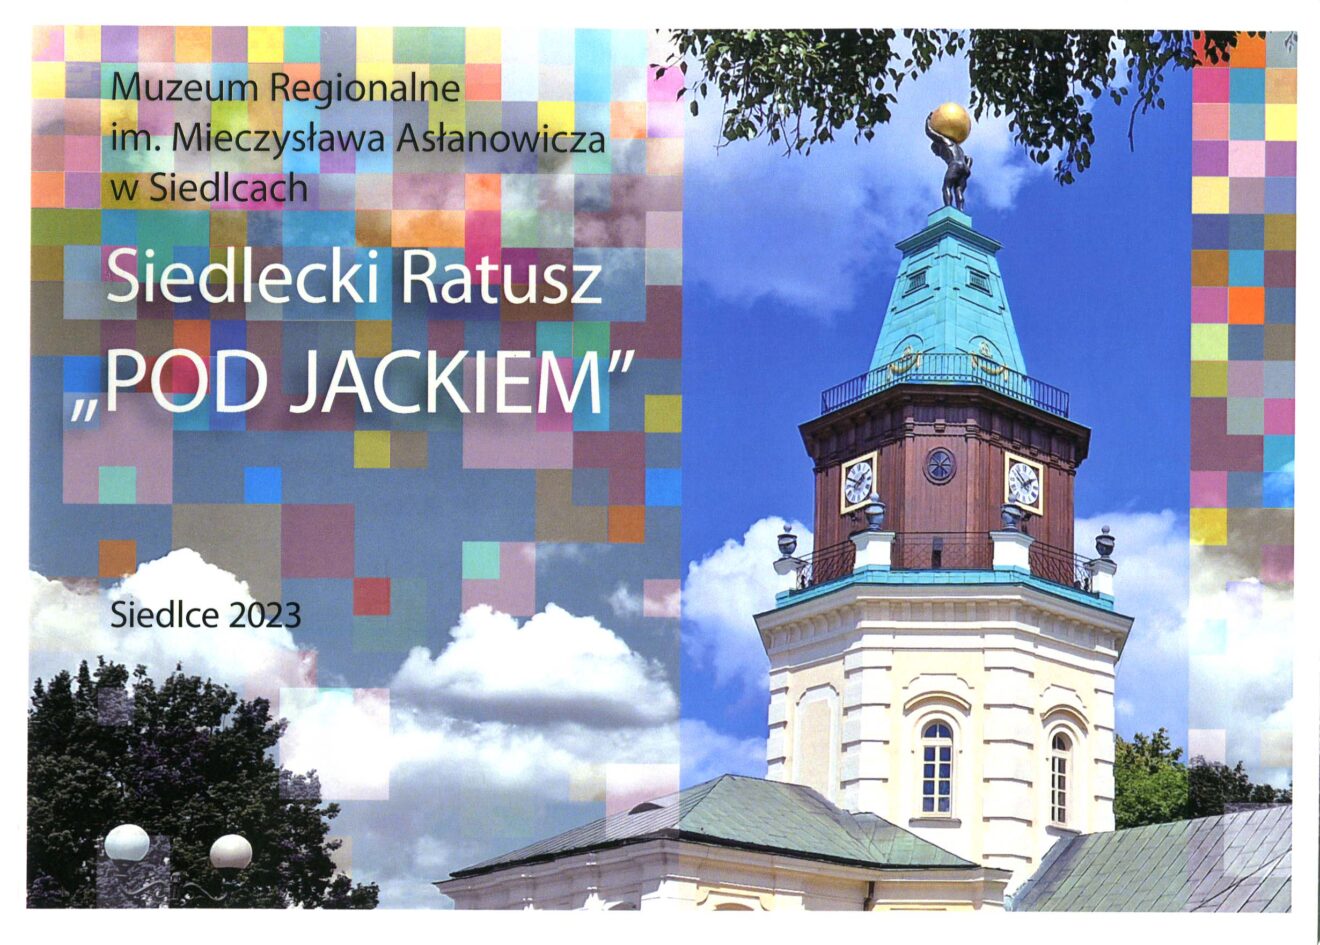 Okładka wydawnictwa z widoczną kolorową fotografią wieży siedleckiego ratusza oraz figura Atlasa zwanego Jackiem